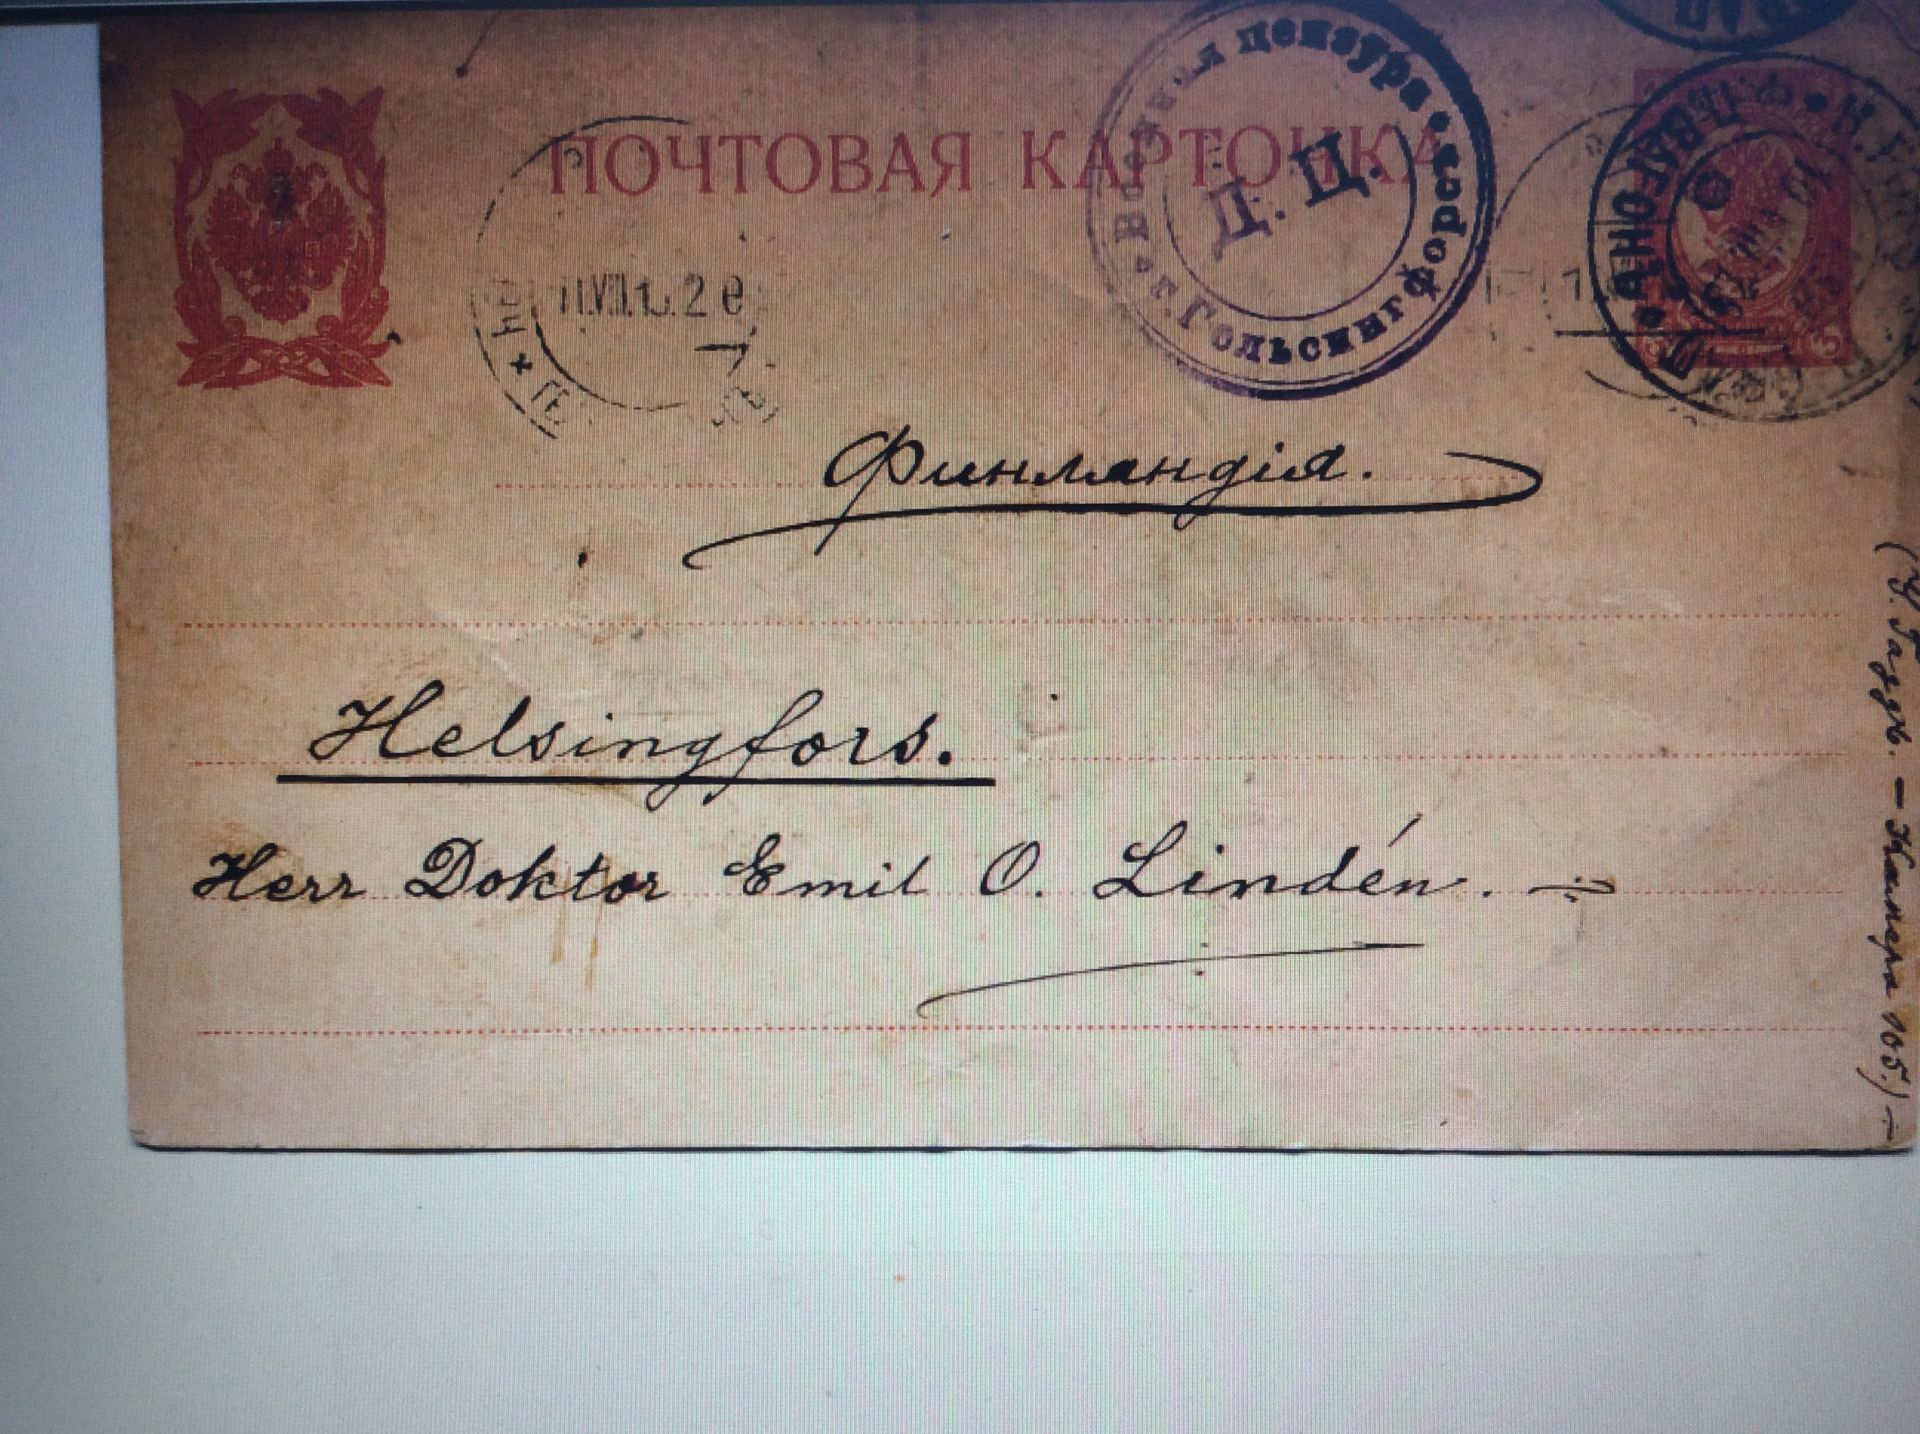 Postkort från fängelset Kresty i Petrograd